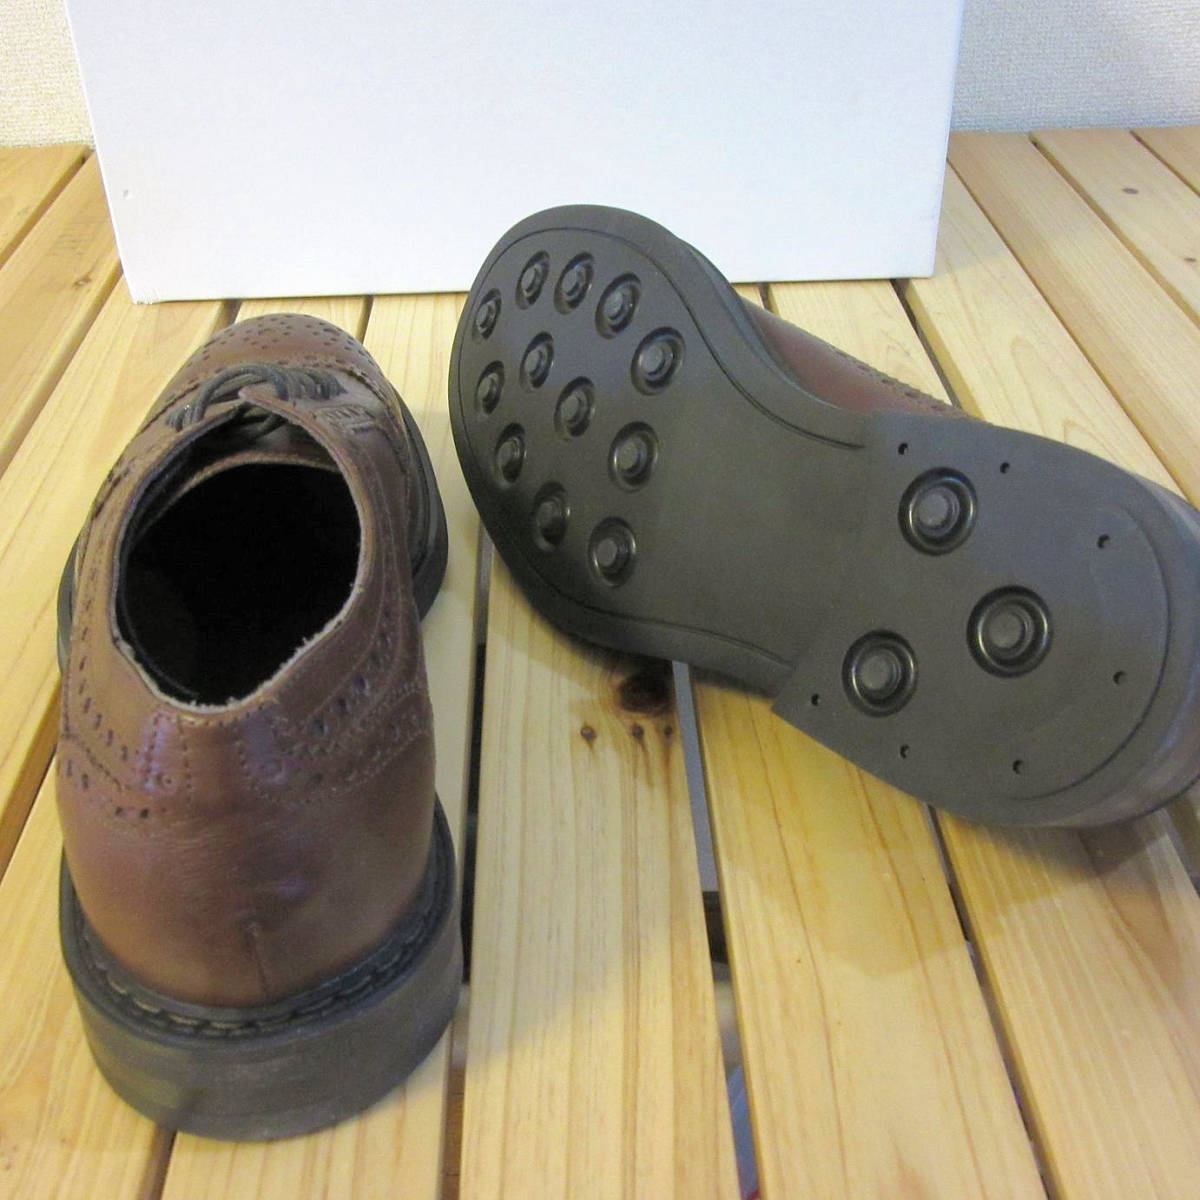 未使用 やや傷・スレあり BOEMOS ボエモス レザーシューズ 革靴 ブローグシューズ ビジネスシューズ ブラウン 茶色 メンズ 41 26cm 程度 の画像6